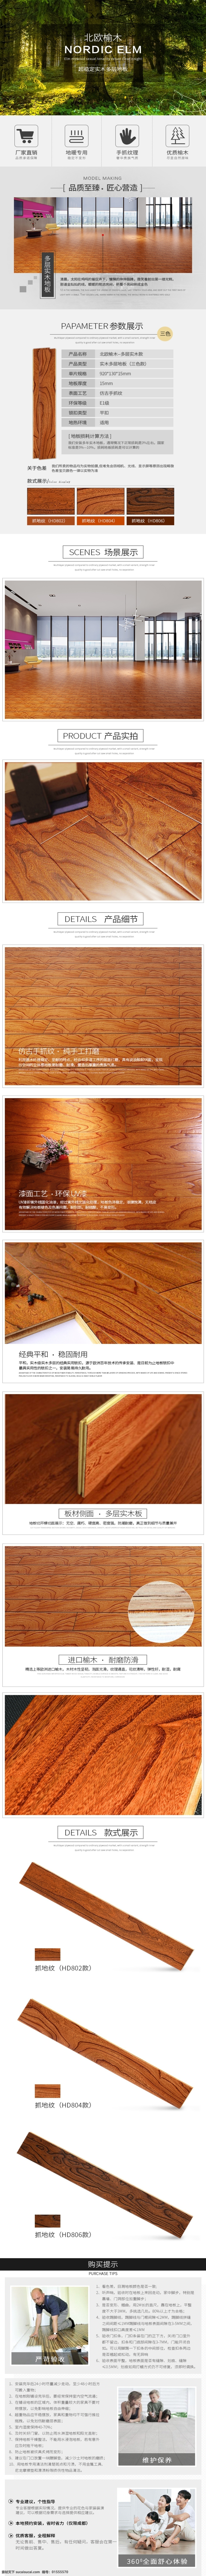 多层 实木地板 海报 电商 详情 页 家居 家具 木地板详情页 地板 多层实木地板